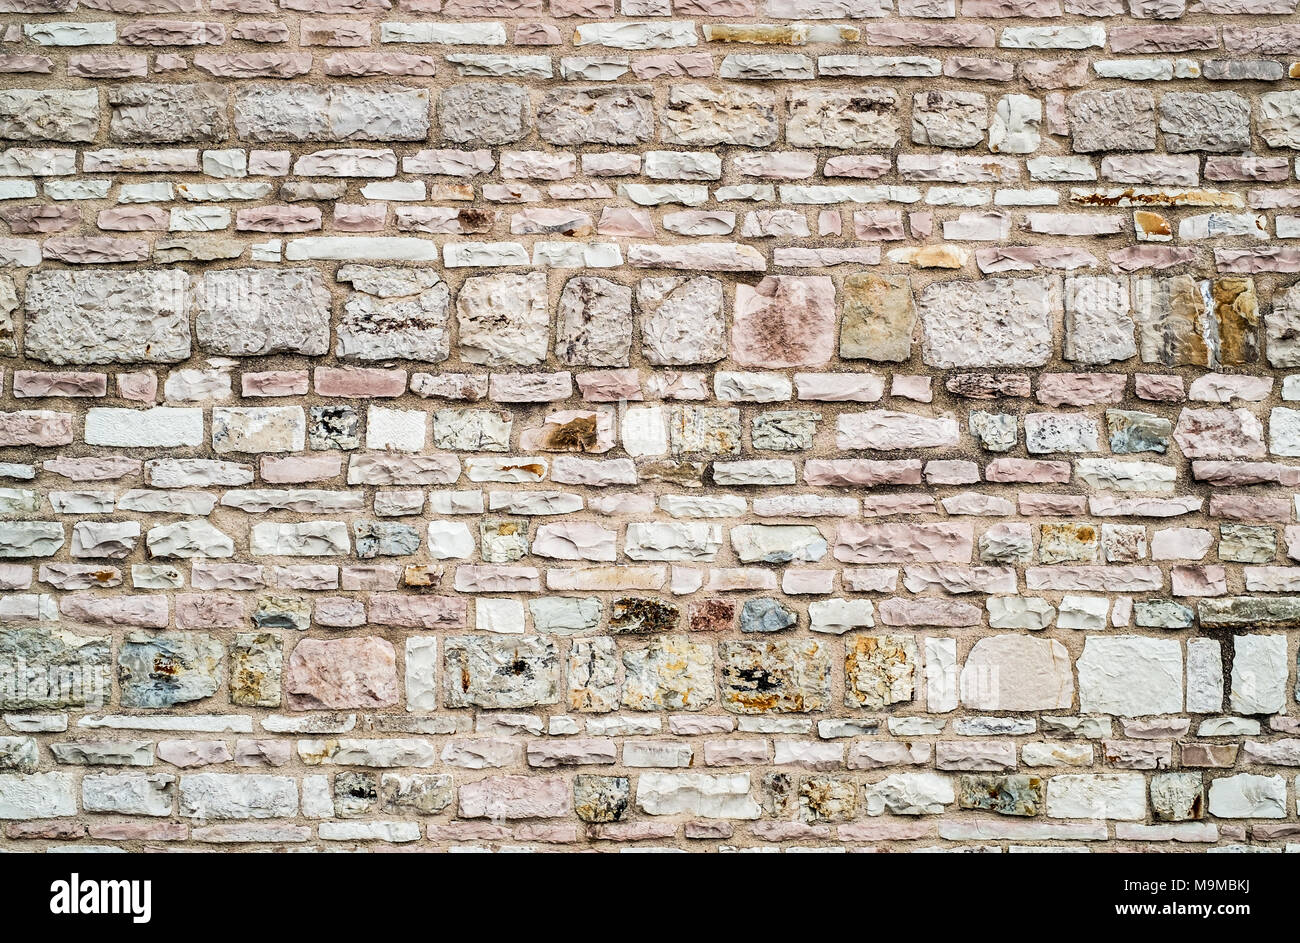 Pietre e mattoni misti in una tradizionale struttura di parete del centro Italia. Foto Stock